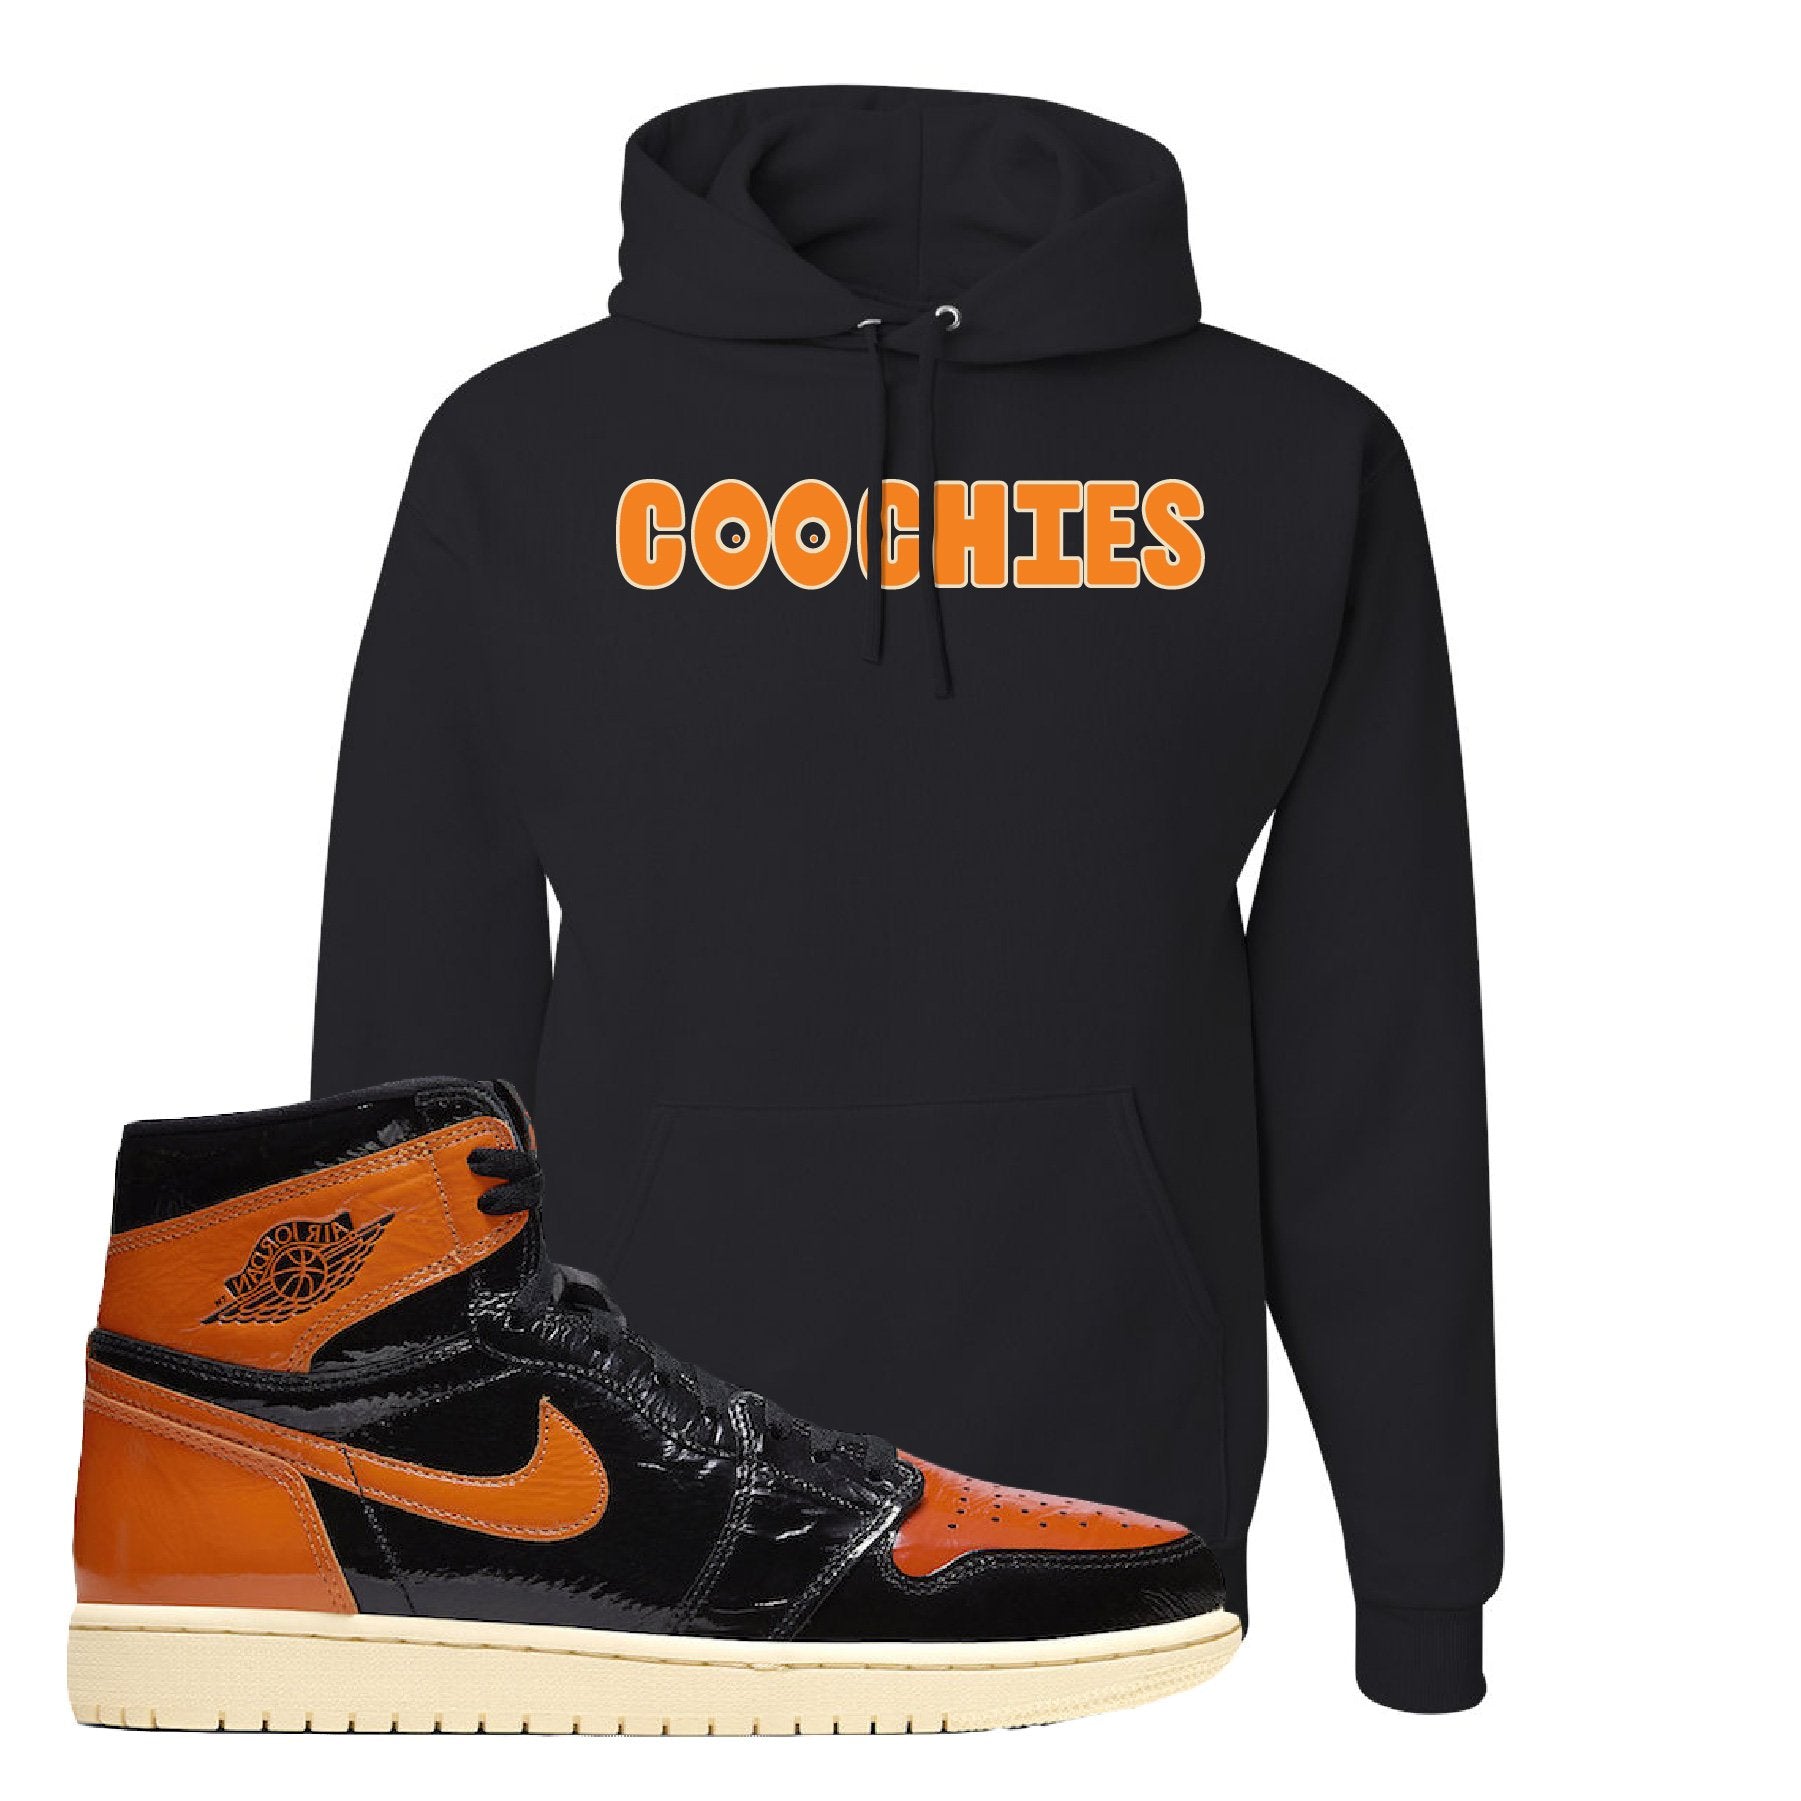 Jordan 1 Shattered Backboard Coochies Black Sneaker Hook Up Pullover Hoodie